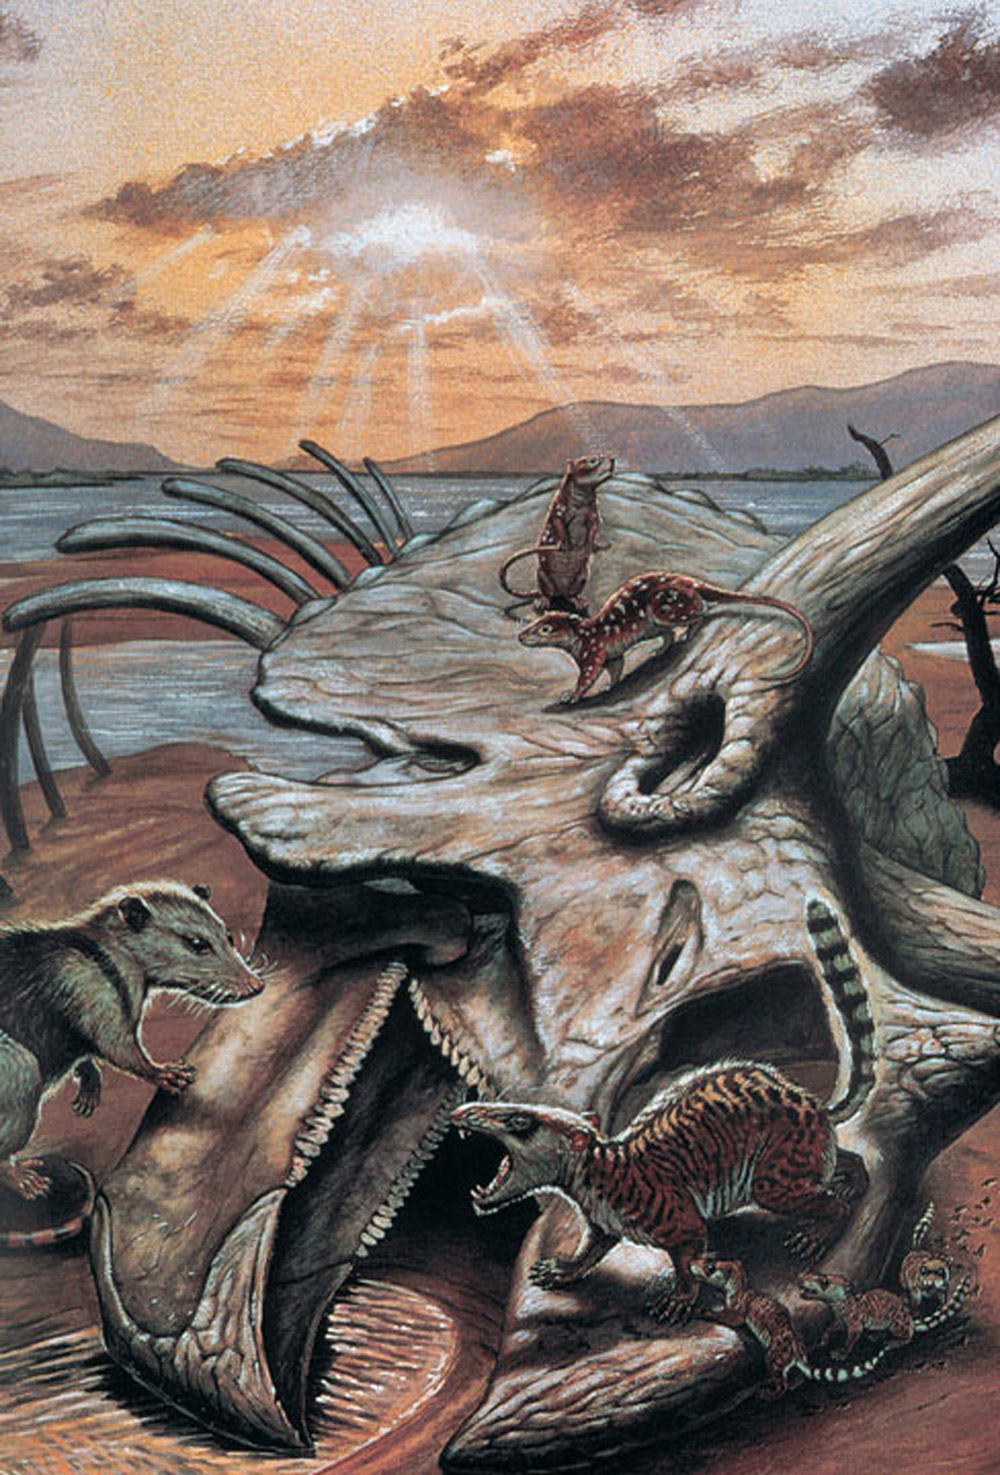 Ăšsvit novĂ©ho svÄ›ta pĹ™ed 66 miliony let. PrimitivnĂ­ savci prolĂ©zajĂ­ lebkou ceratopsida triceratopse, pĹ™ipraveni projĂ­t evoluÄŤnĂ­ radiacĂ­ a pĹ™evzĂ­t dominanci nad ranÄ› paleogennĂ­mi pevninskĂ˝mi ekosystĂ©my. Kredit: Mark Hallet